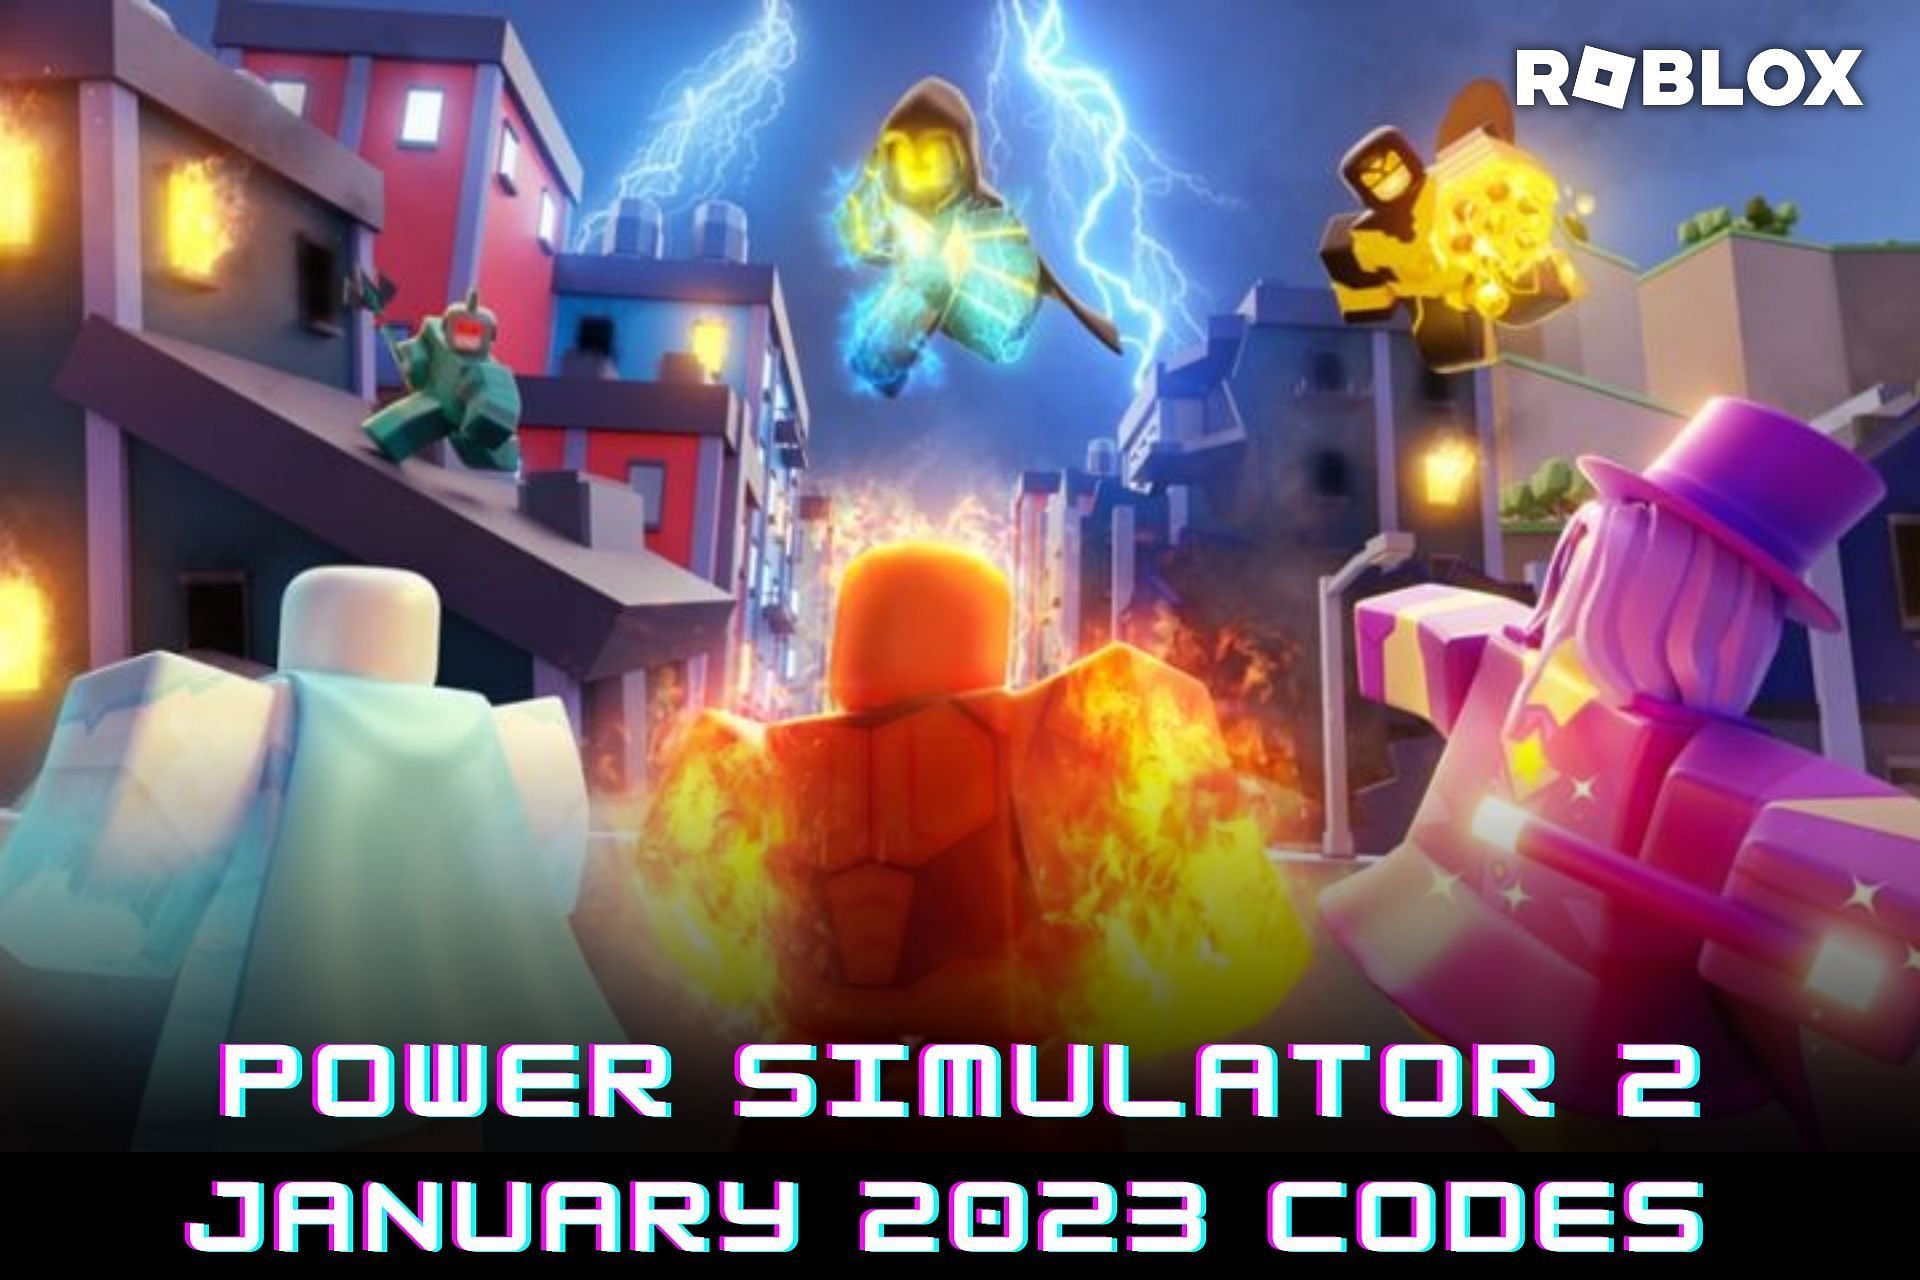 Roblox Power Simulator 2 Gameplay